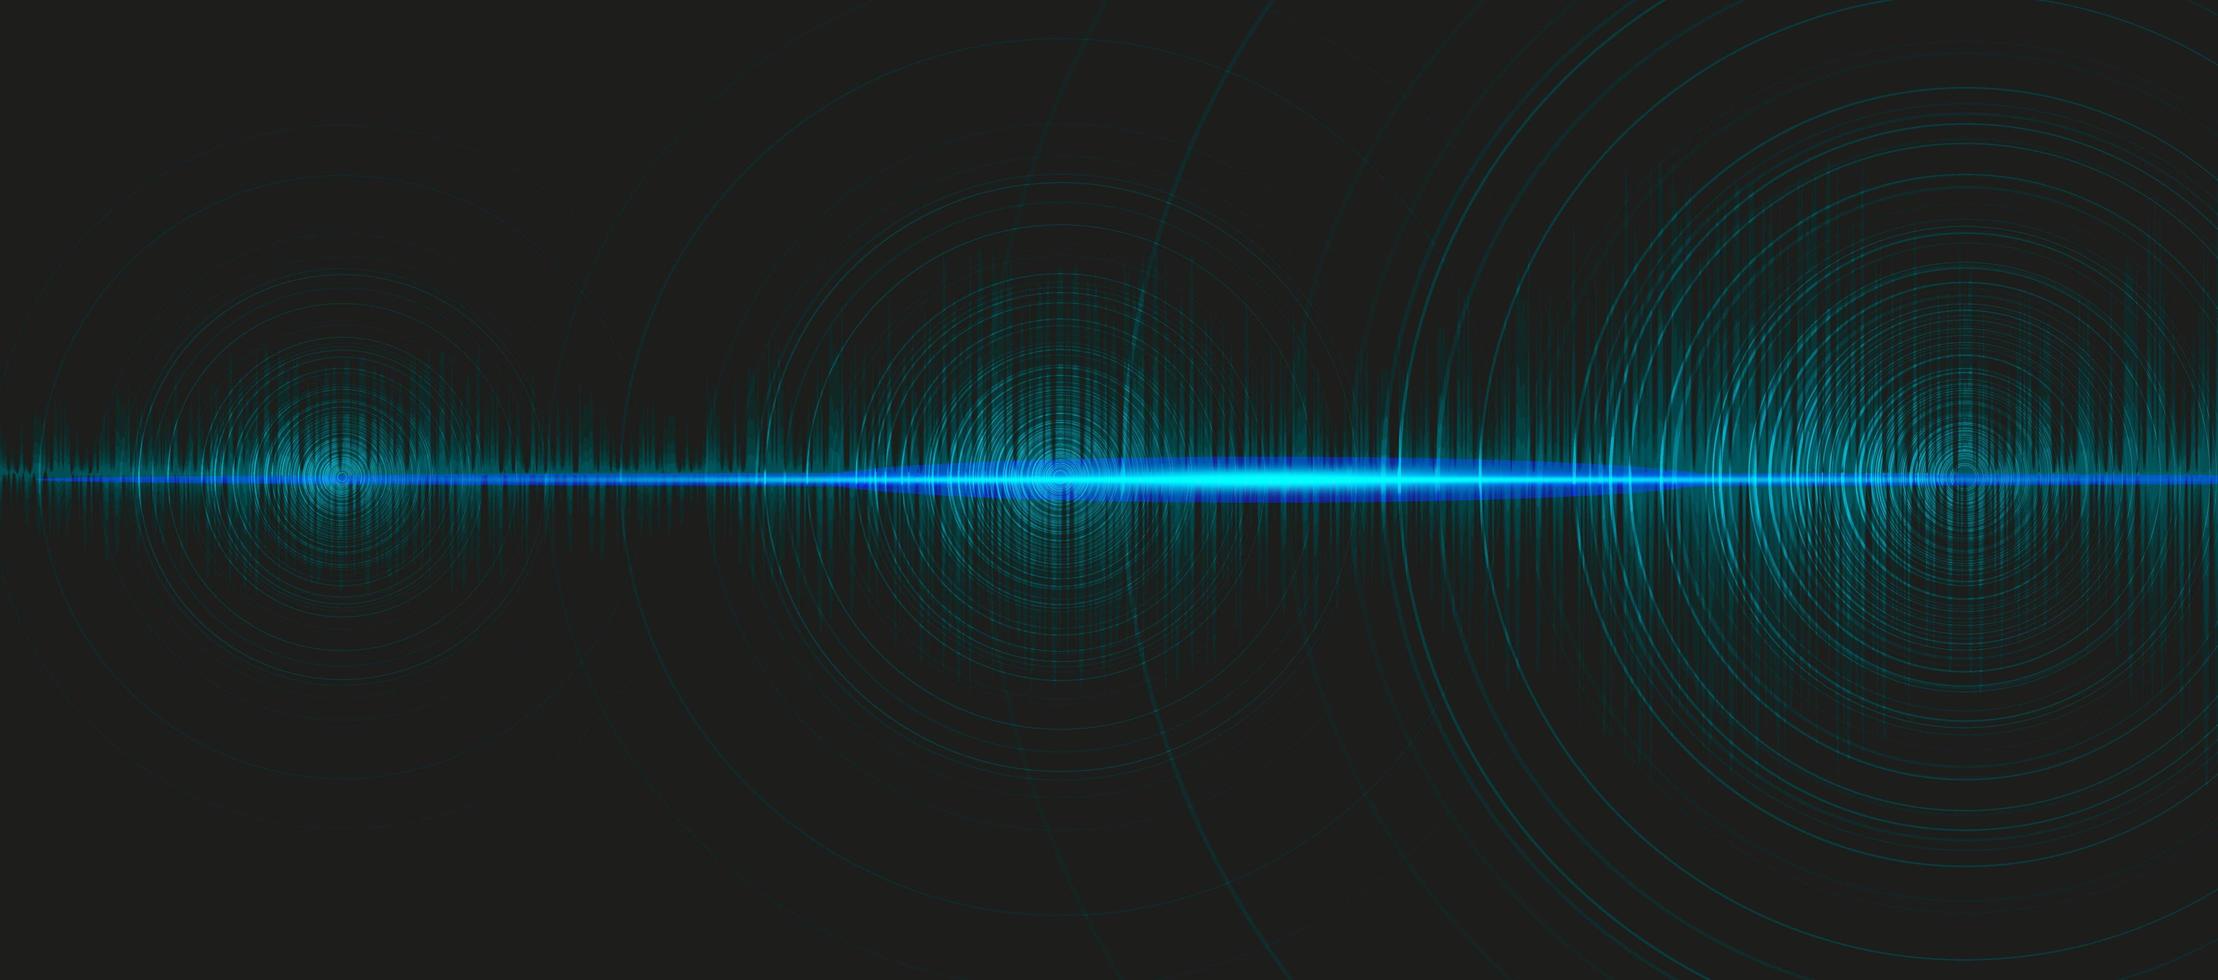 onda sonora digitale hi-tech scala richter bassa e alta con vibrazione del cerchio su sfondo azzurro, concetto di diagramma delle onde di tecnologia e terremoto, design per studio musicale e scienza, illustrazione vettoriale. vettore